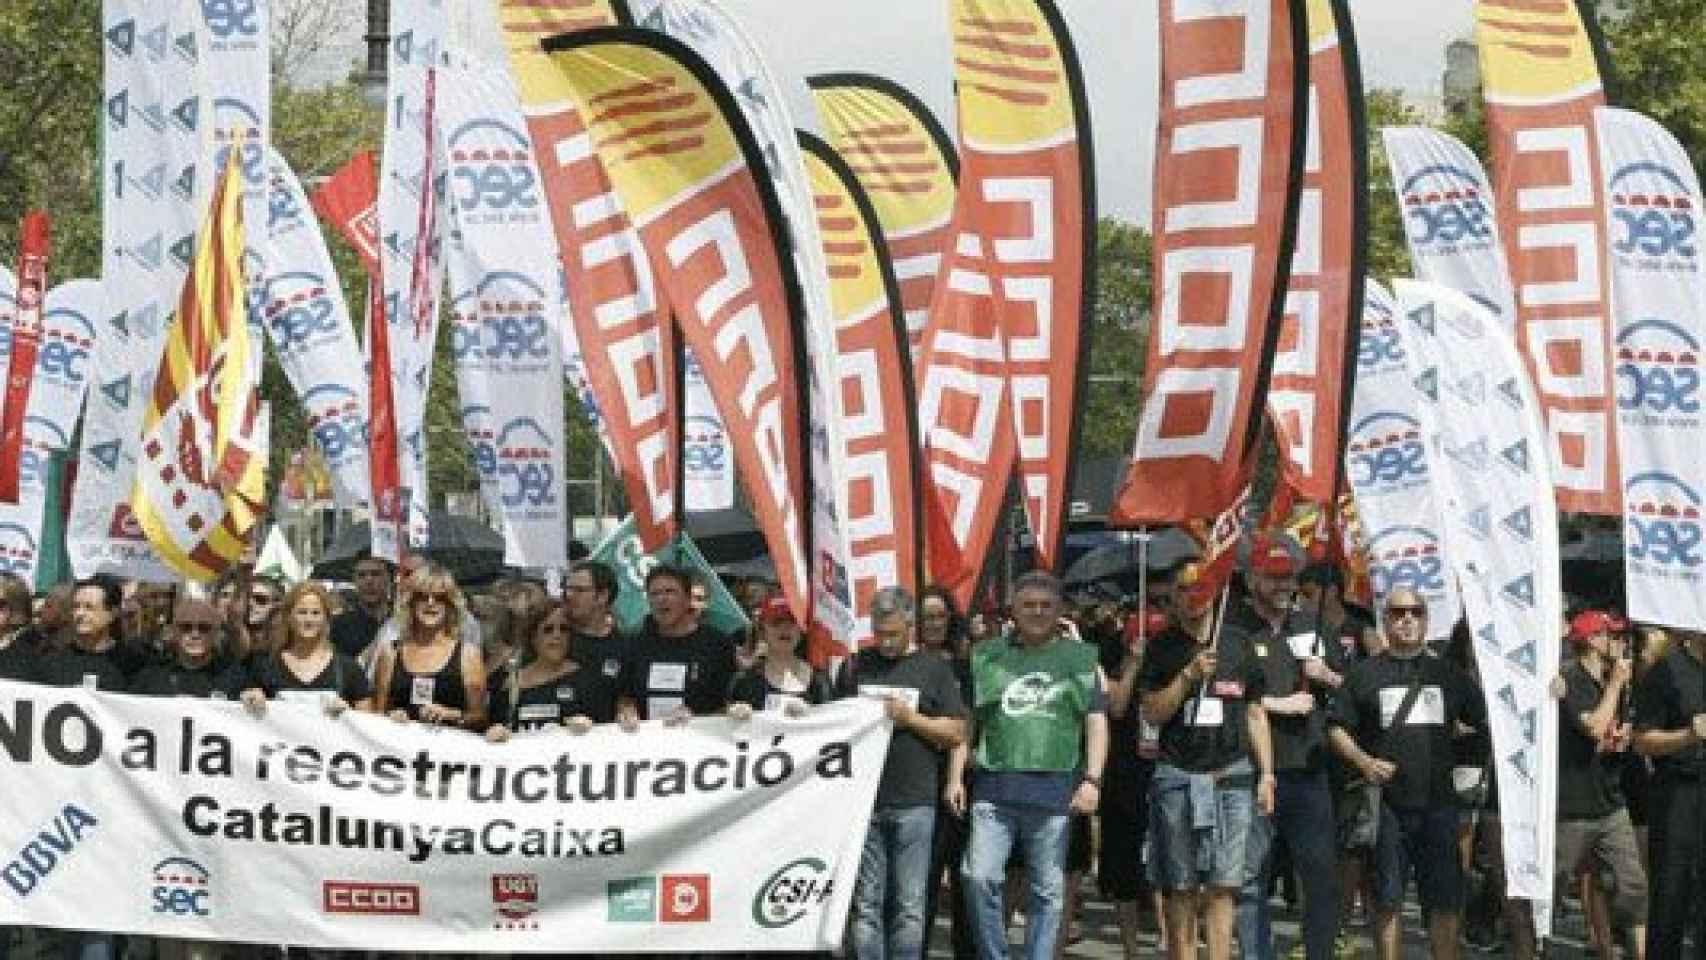 Unos 2.500 empleados de CatalunyaCaixa salieron a la calle para protestar contra la reestructuración en la entidad